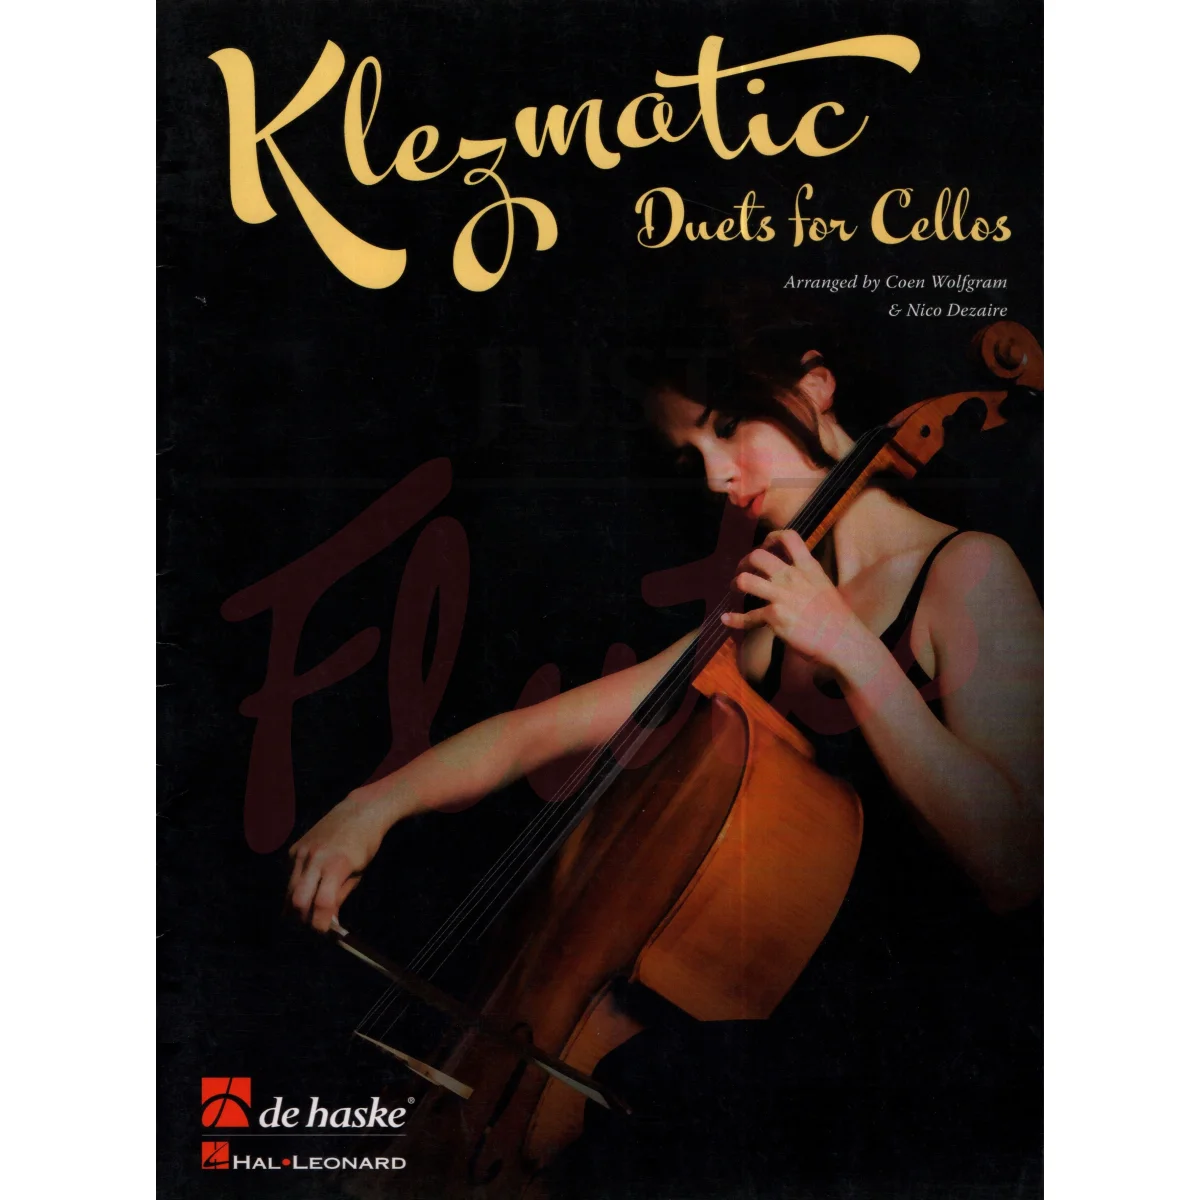 Klezmatic - Duets for Cellos